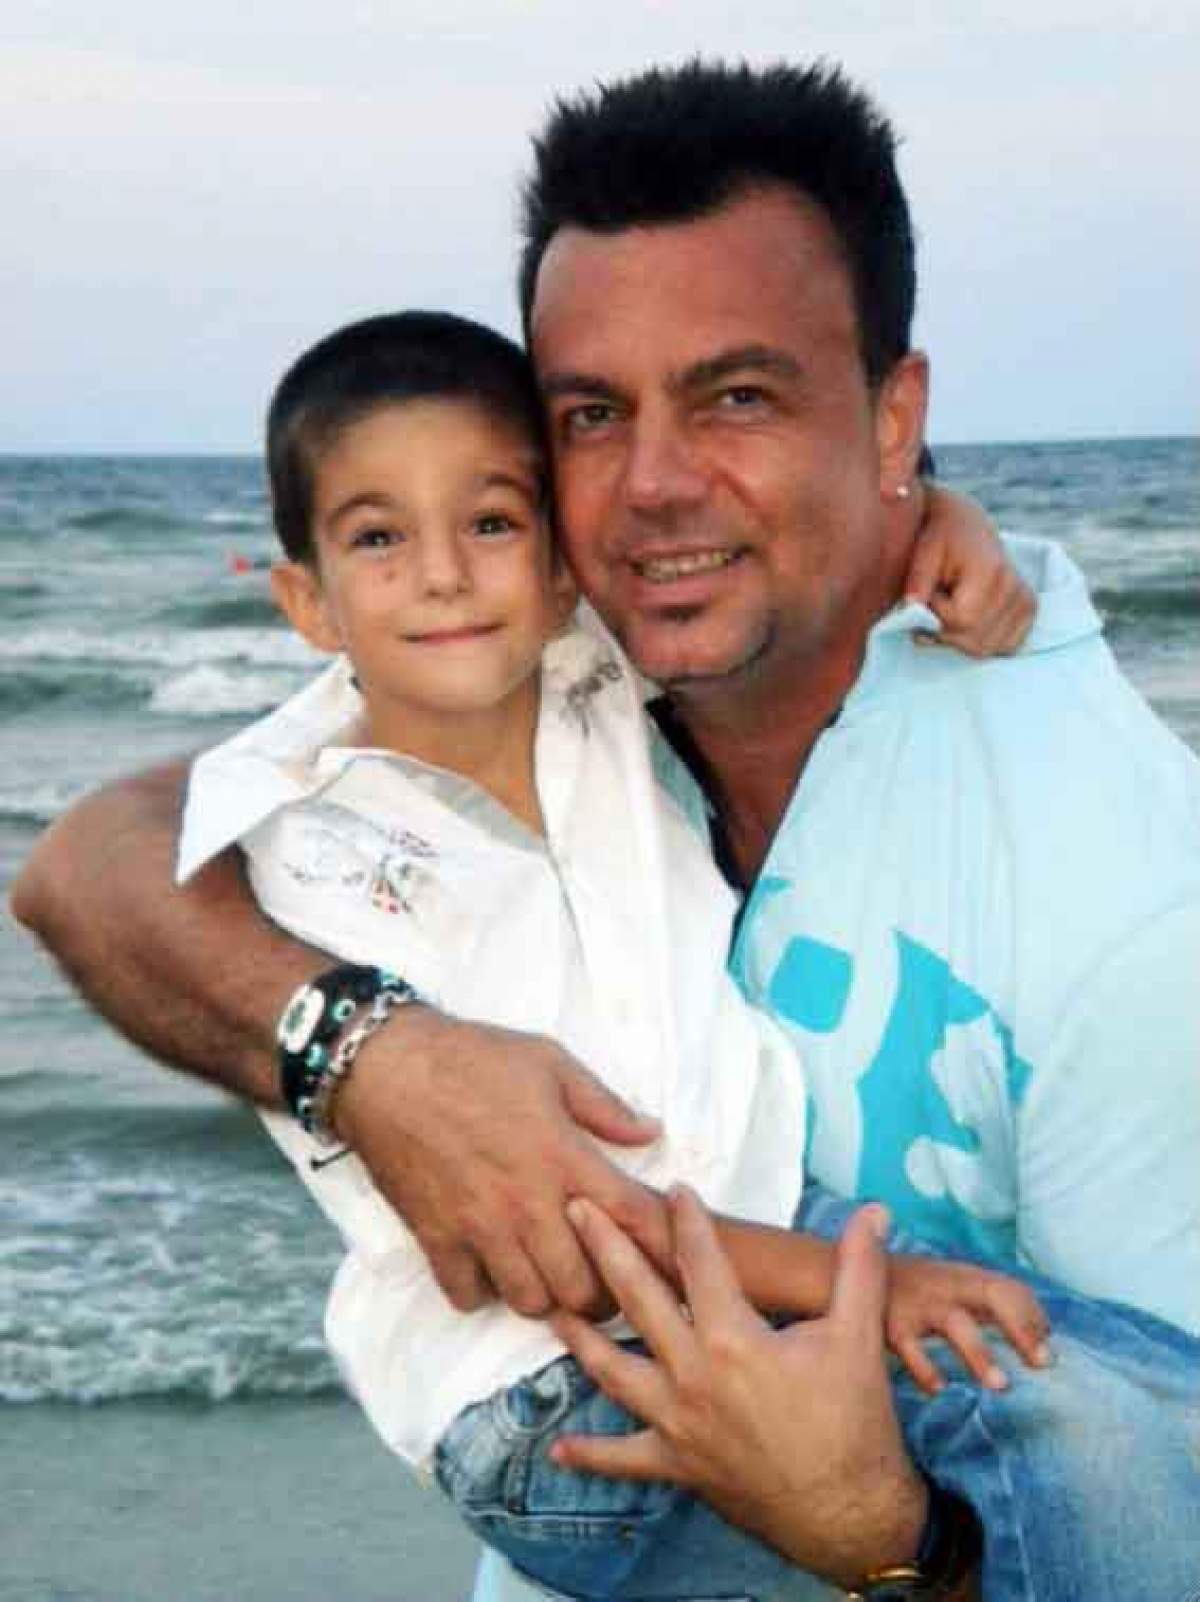 Fiul lui Adrian Enache, hotărât în privința carierei! Nu vrea să calce pe urmele tatălui său/ FOTO